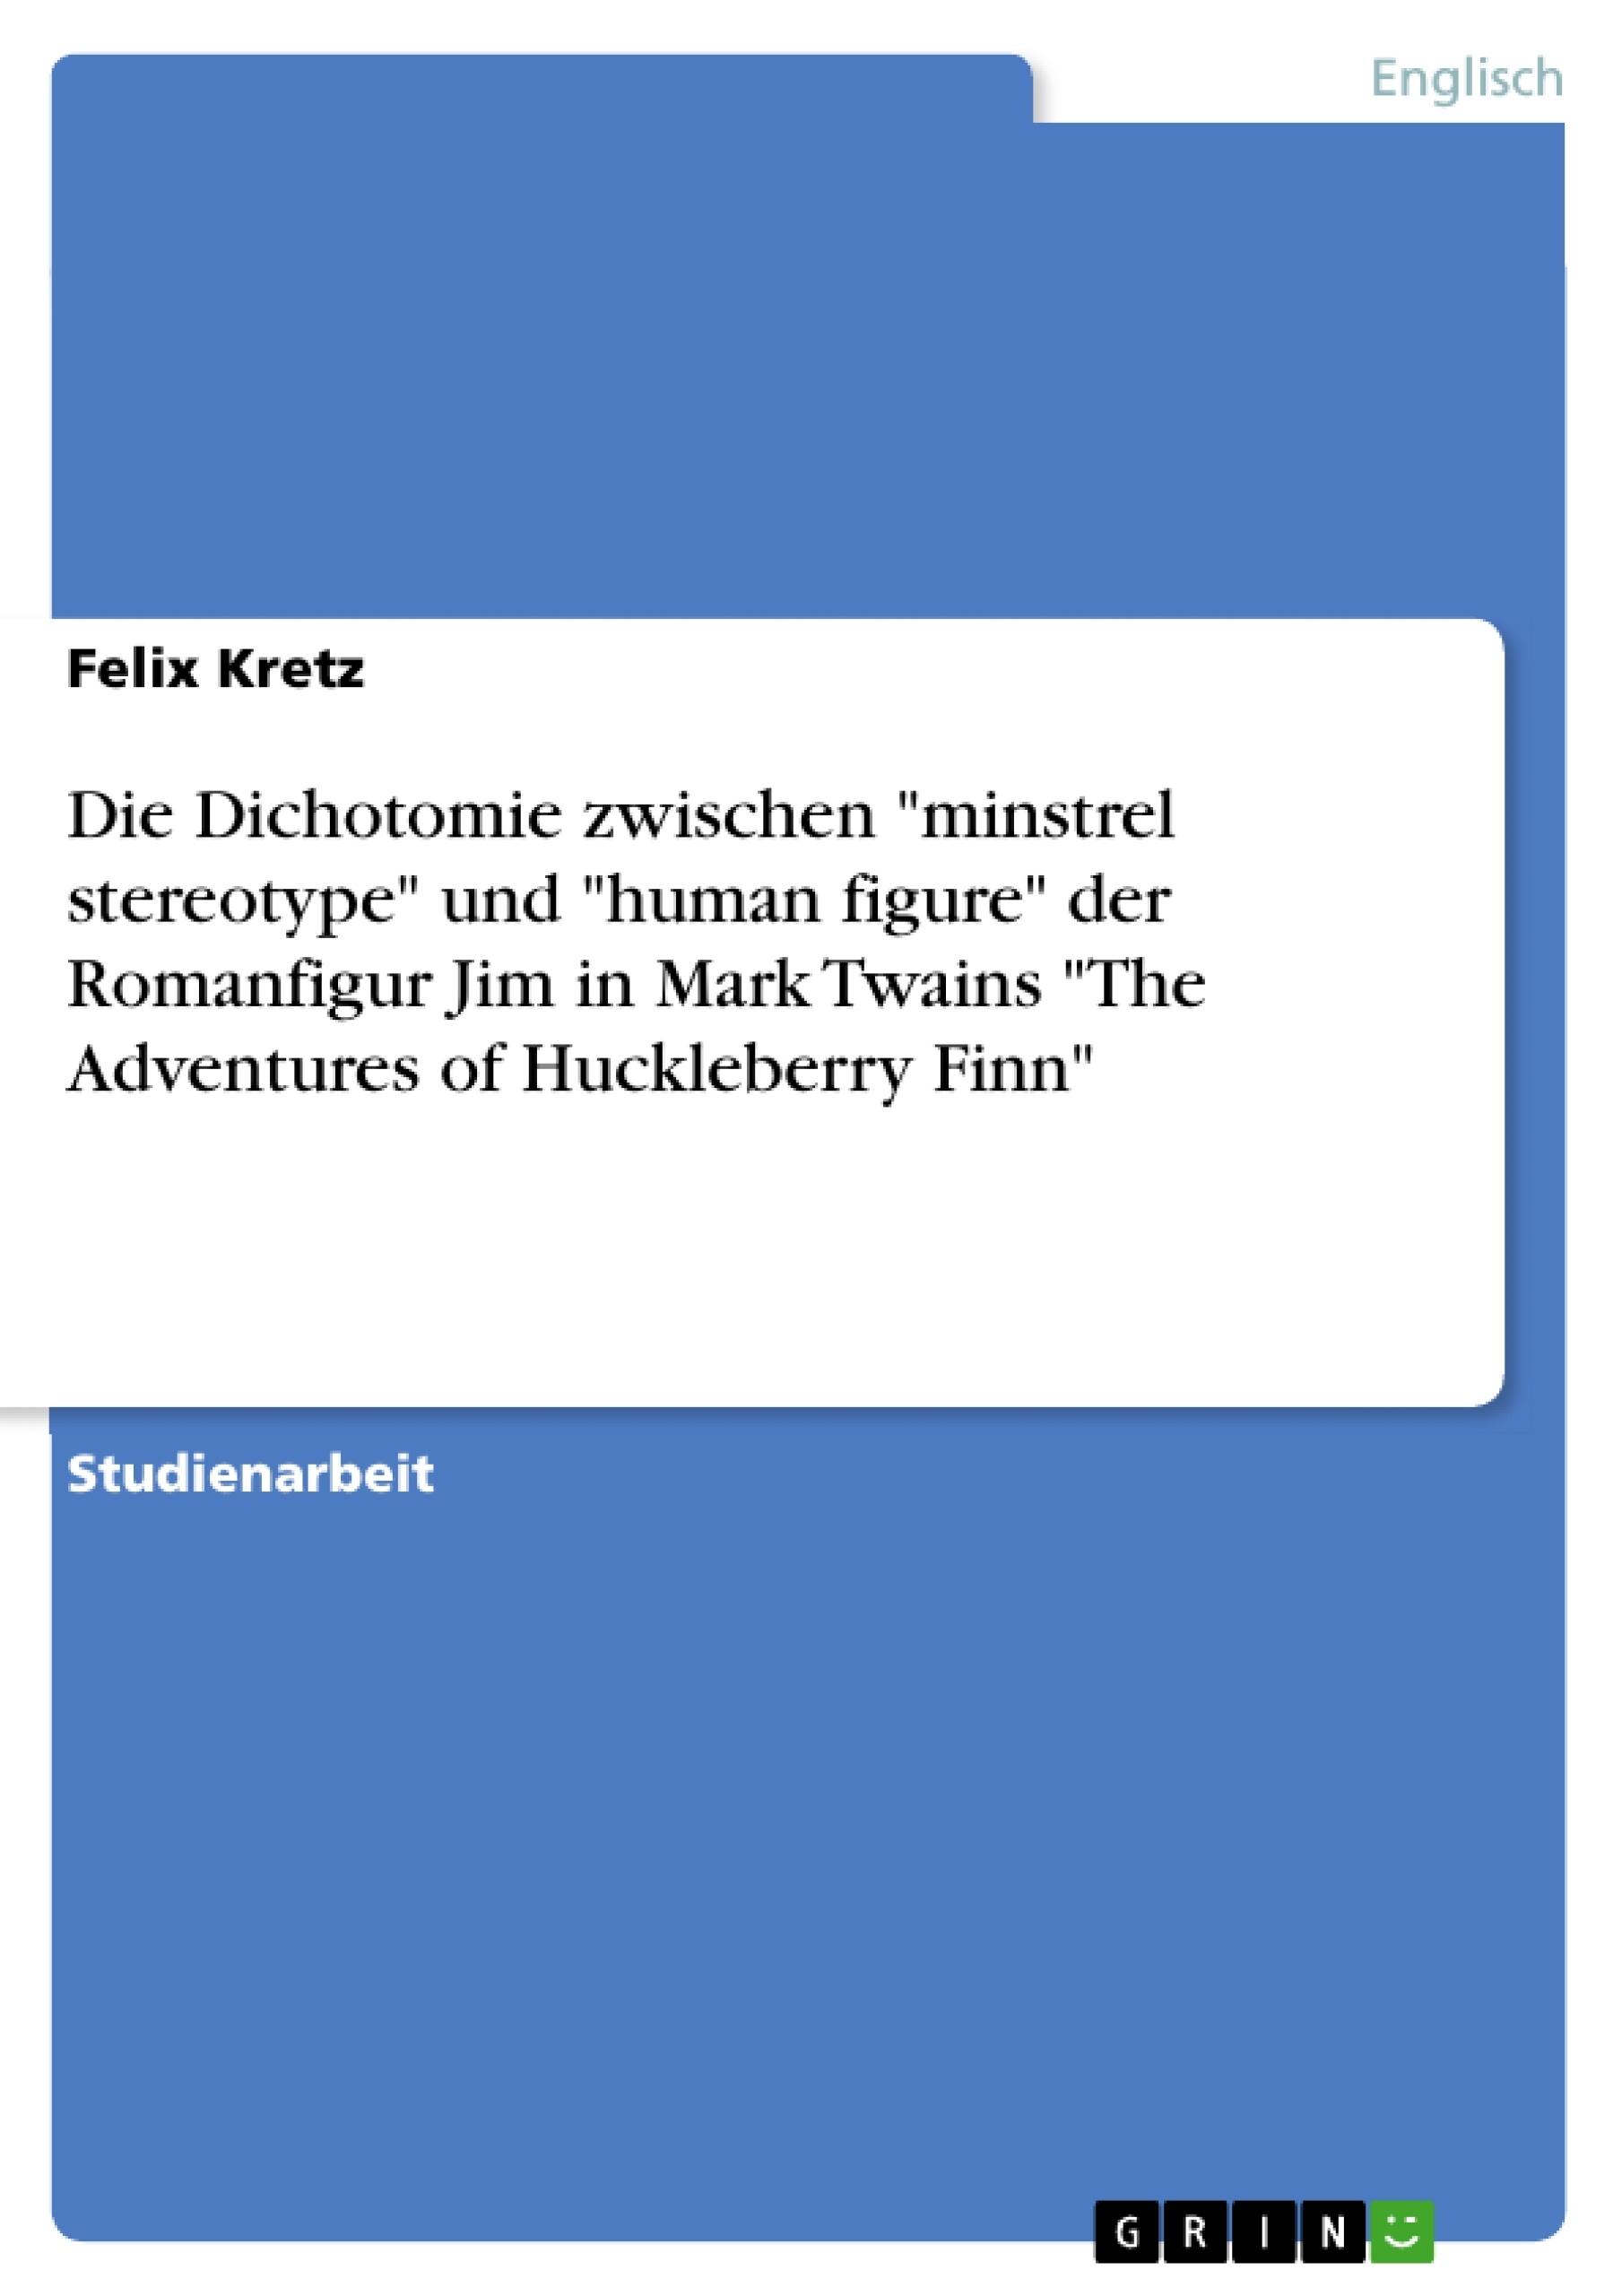 Titel: Die Dichotomie  zwischen "minstrel stereotype" und "human figure"  der Romanfigur Jim in Mark Twains "The Adventures of Huckleberry Finn"